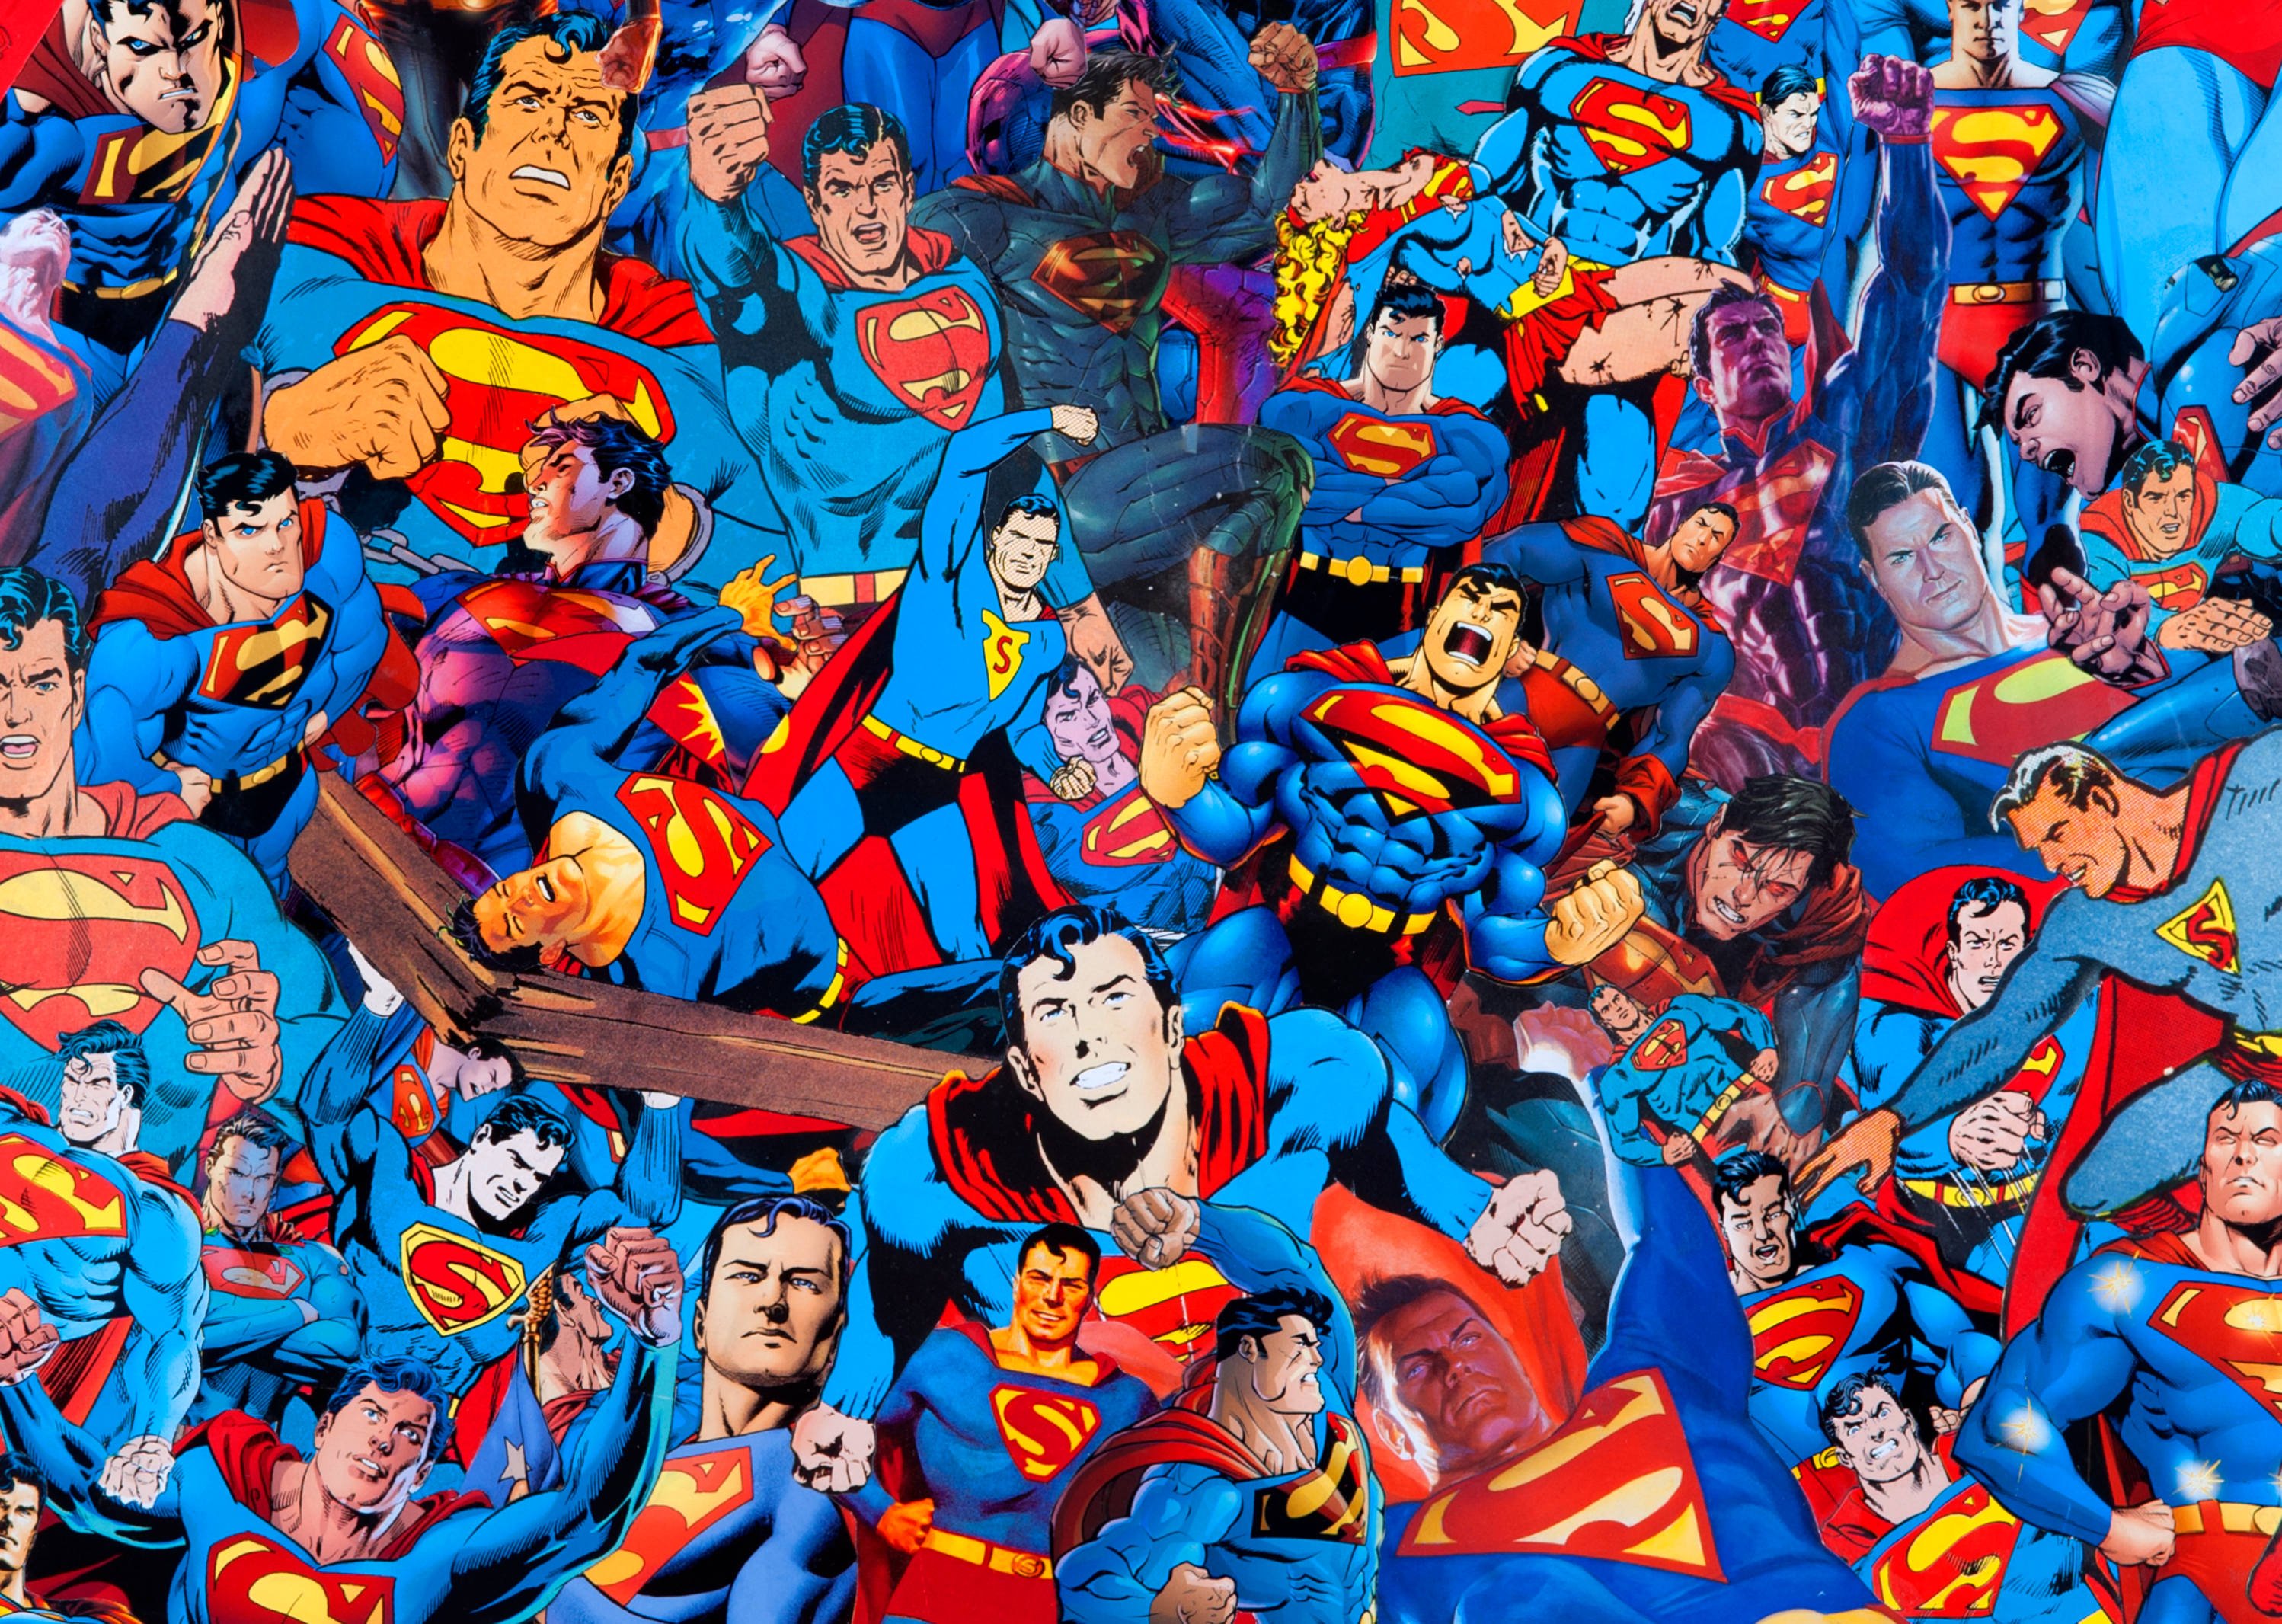 Am super heroes. Супергерои. Картинки супергероев. Супермен коллаж.